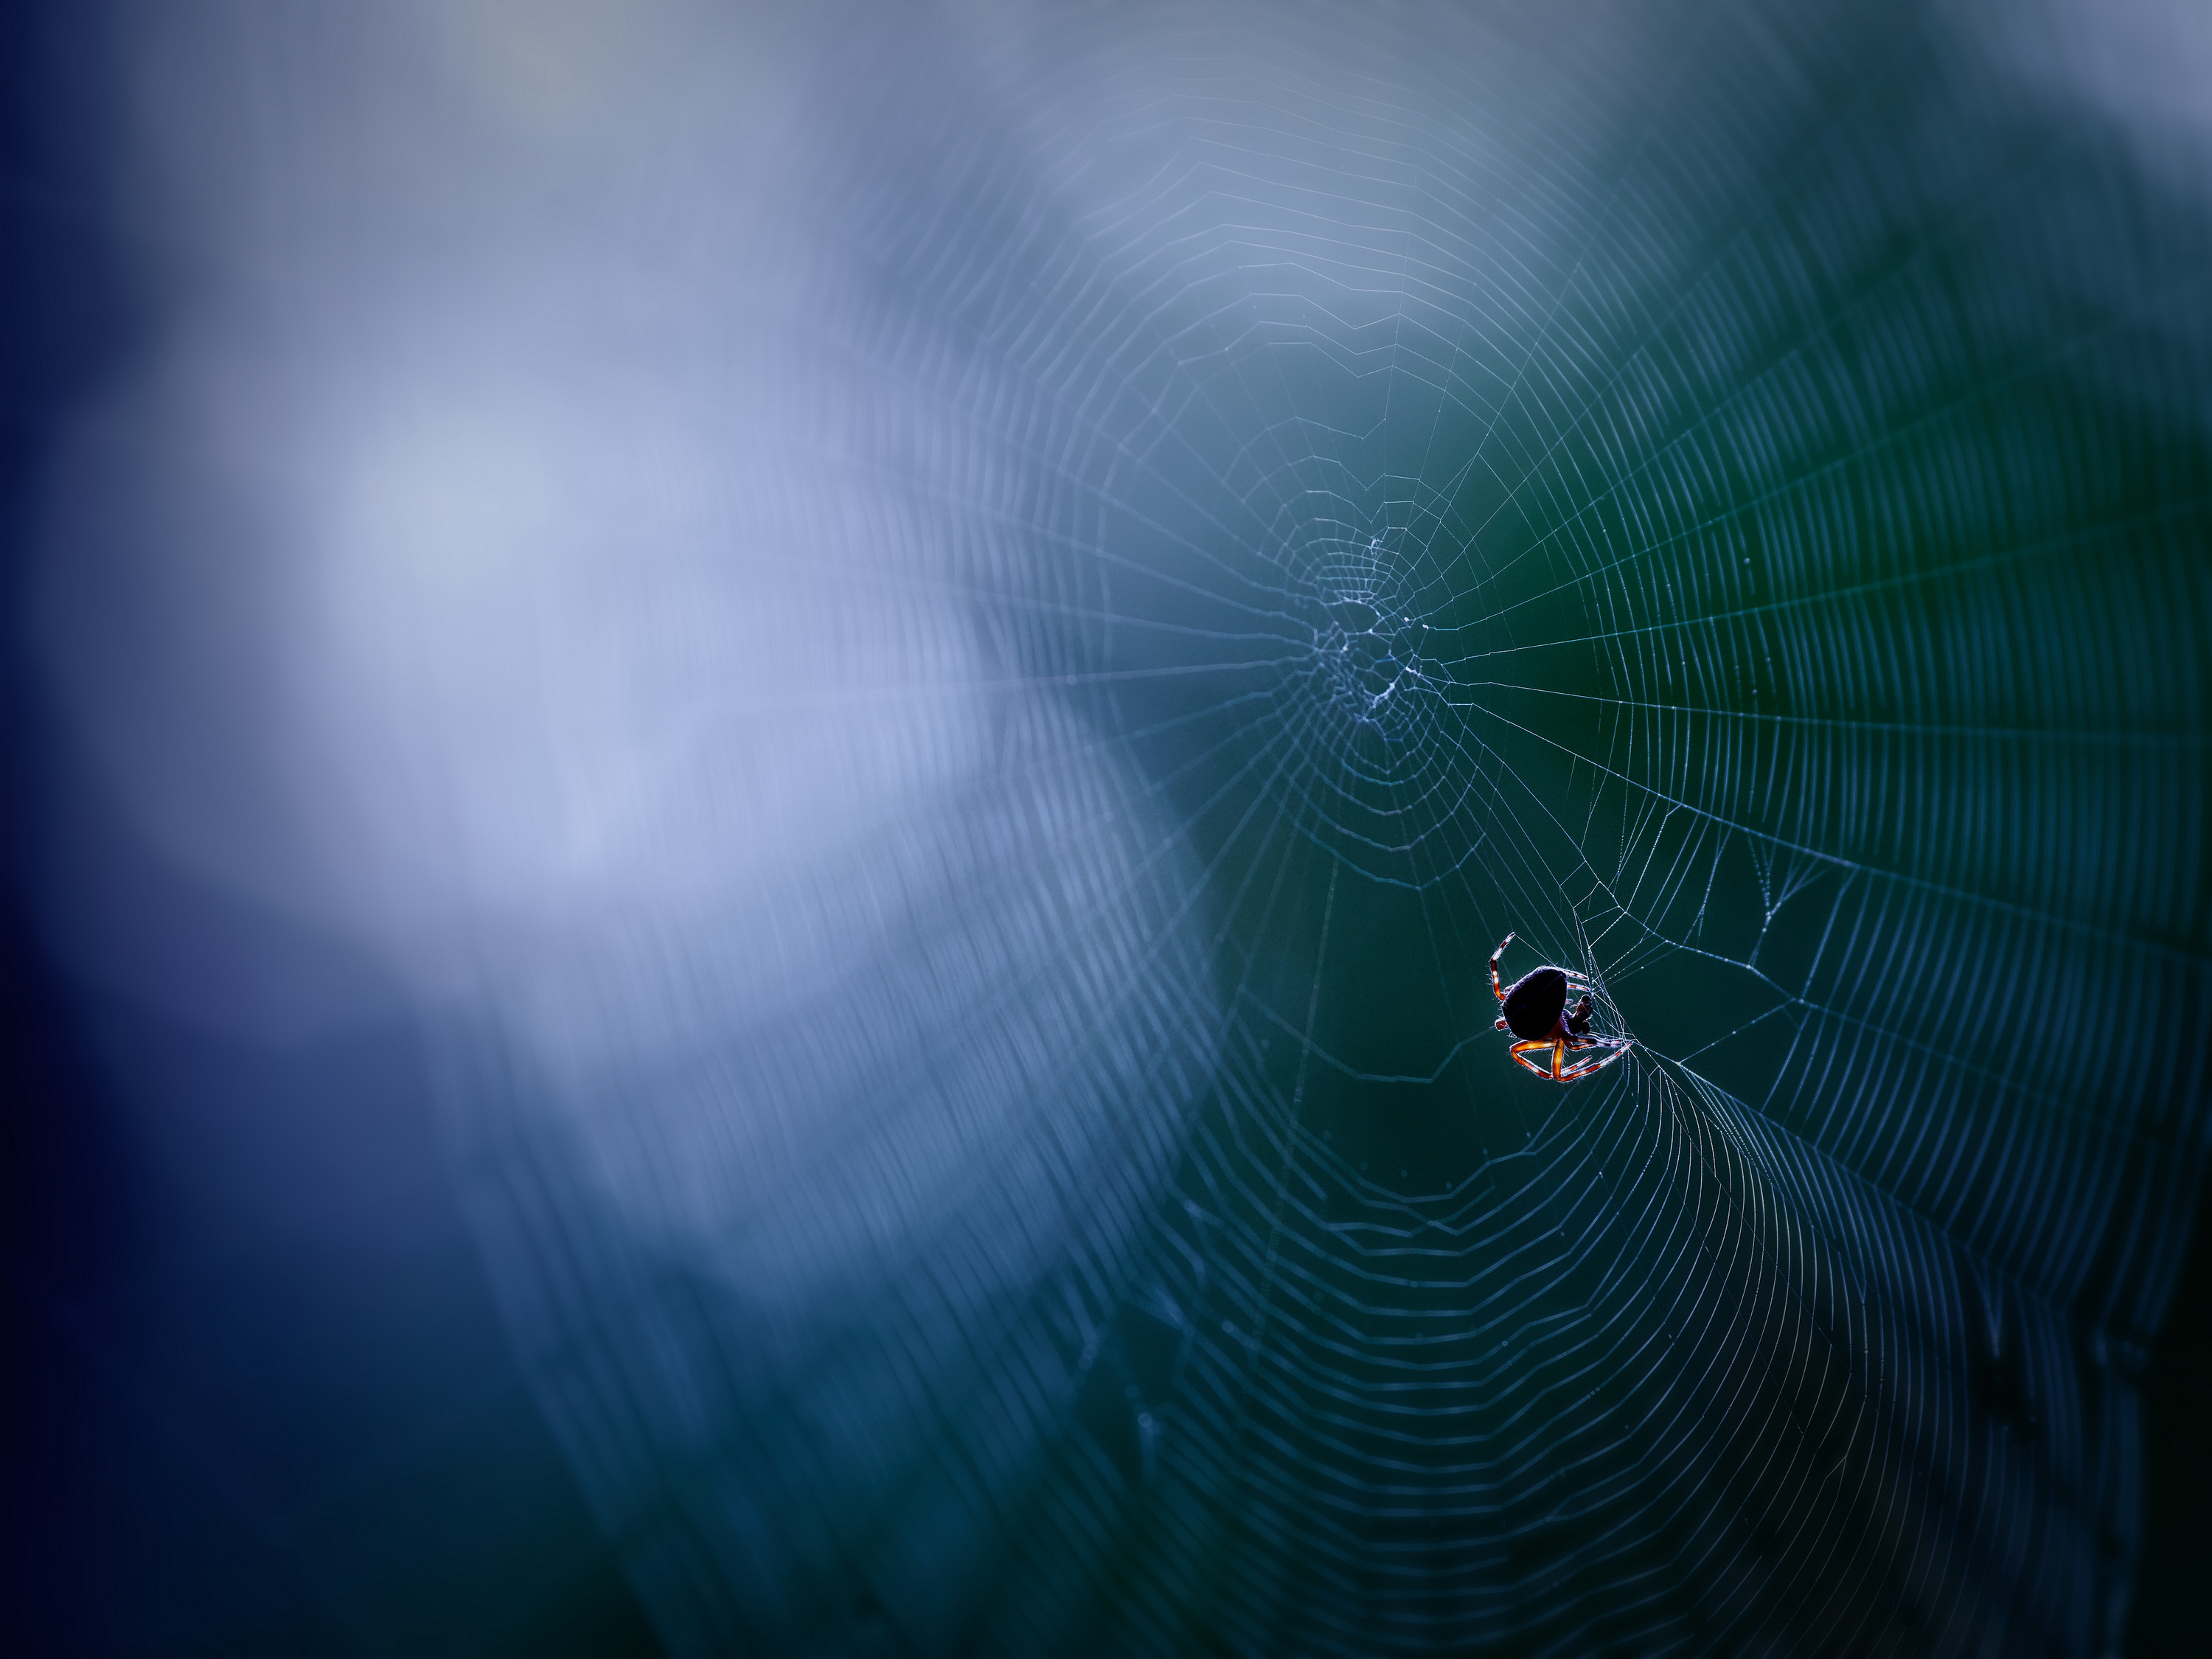 The unknown spider